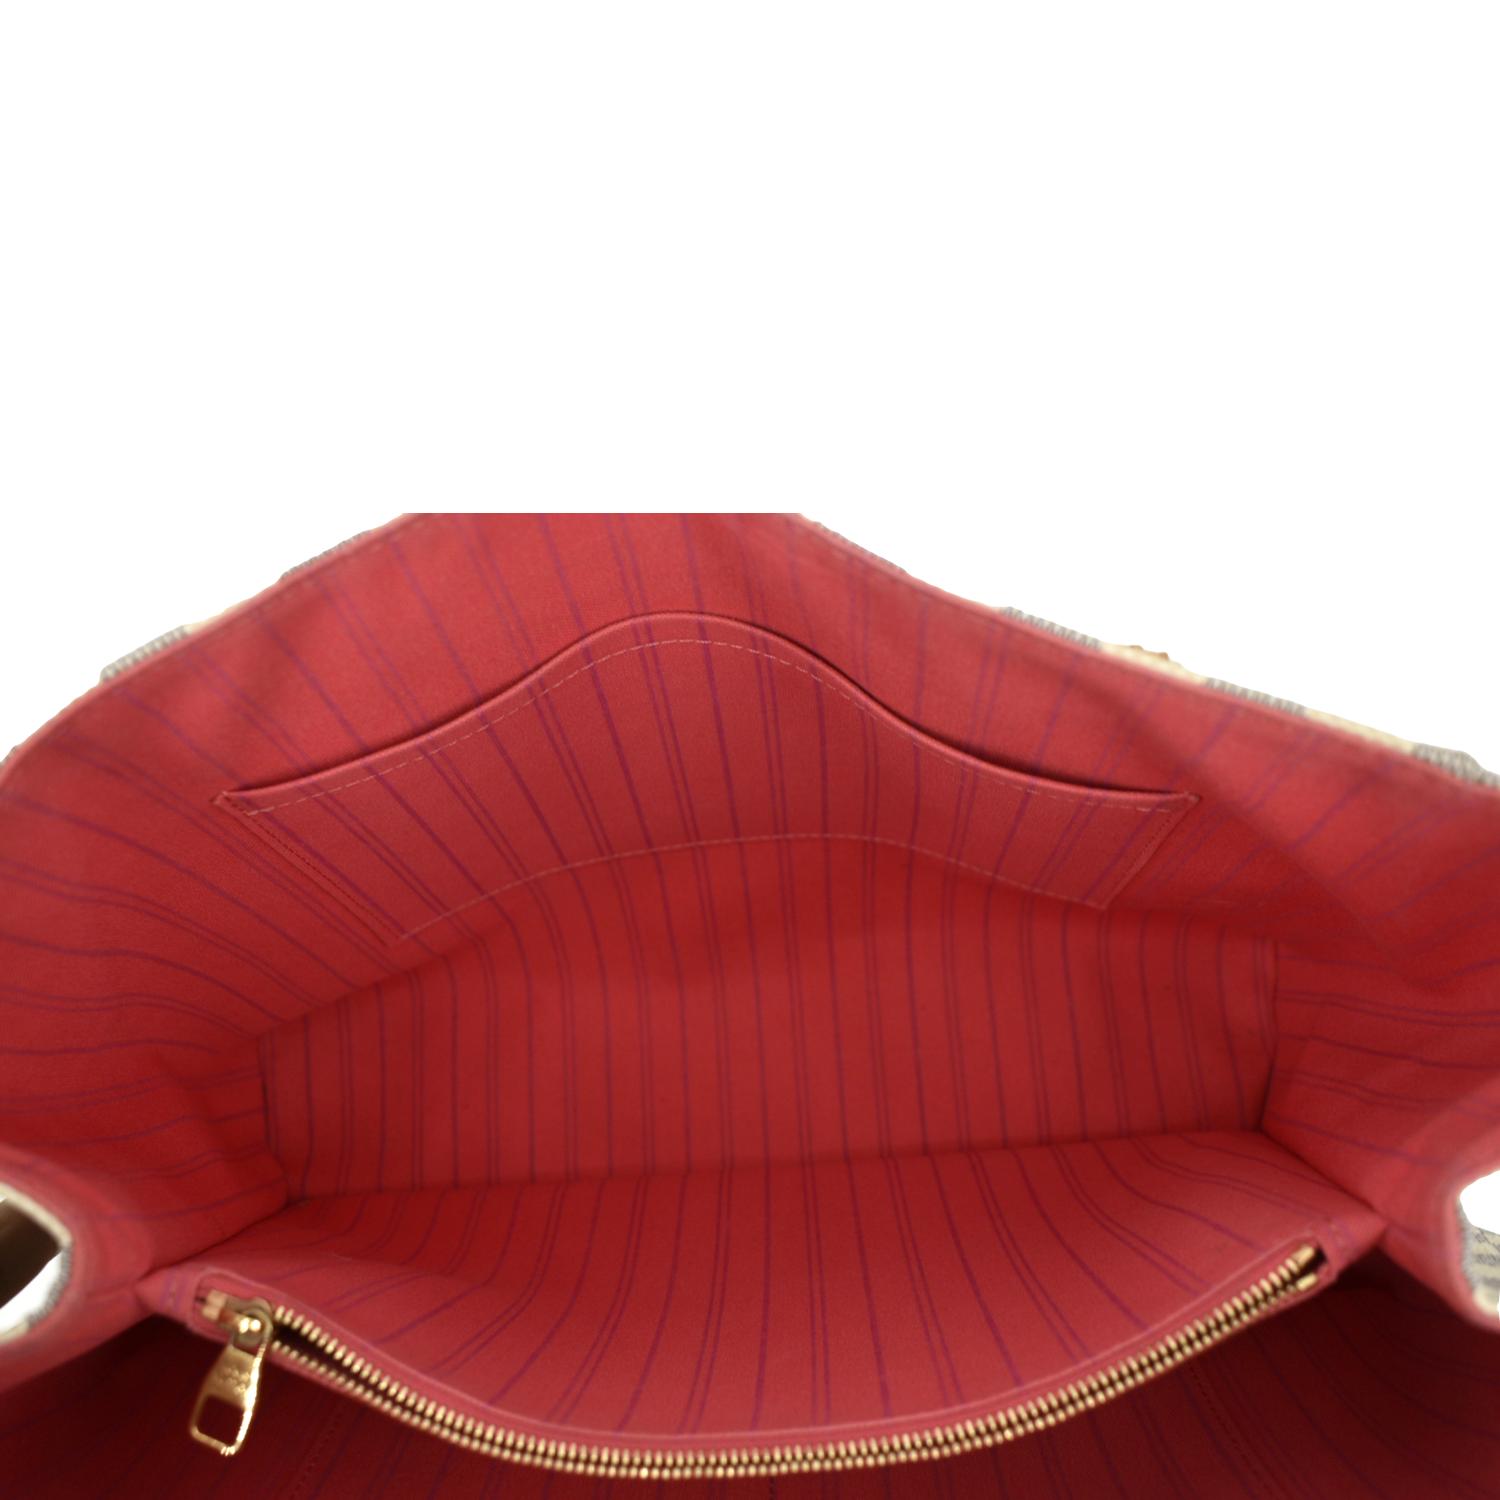 Sold at Auction: Louis Vuitton, Louis Vuitton handbag, Calvi Tote Damier  Azur, leather, accompanied by provenance documents